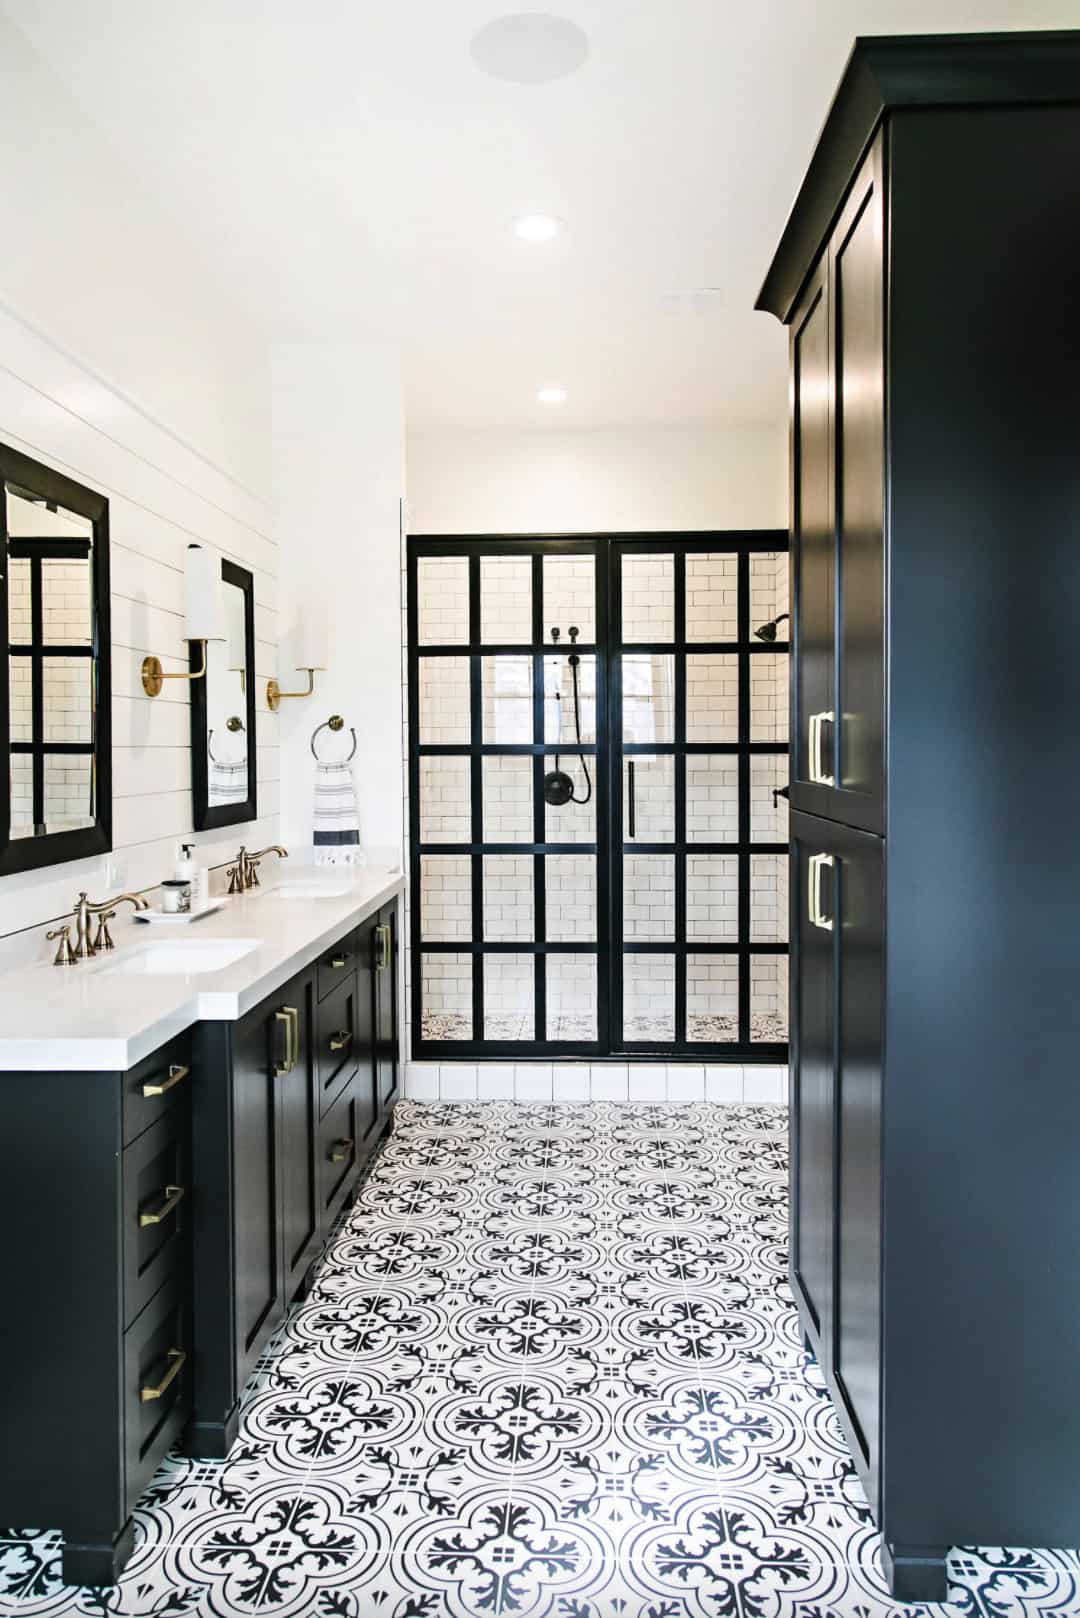 black and white bathroom basement idea pattern floor tile black frame glass shower black vanity